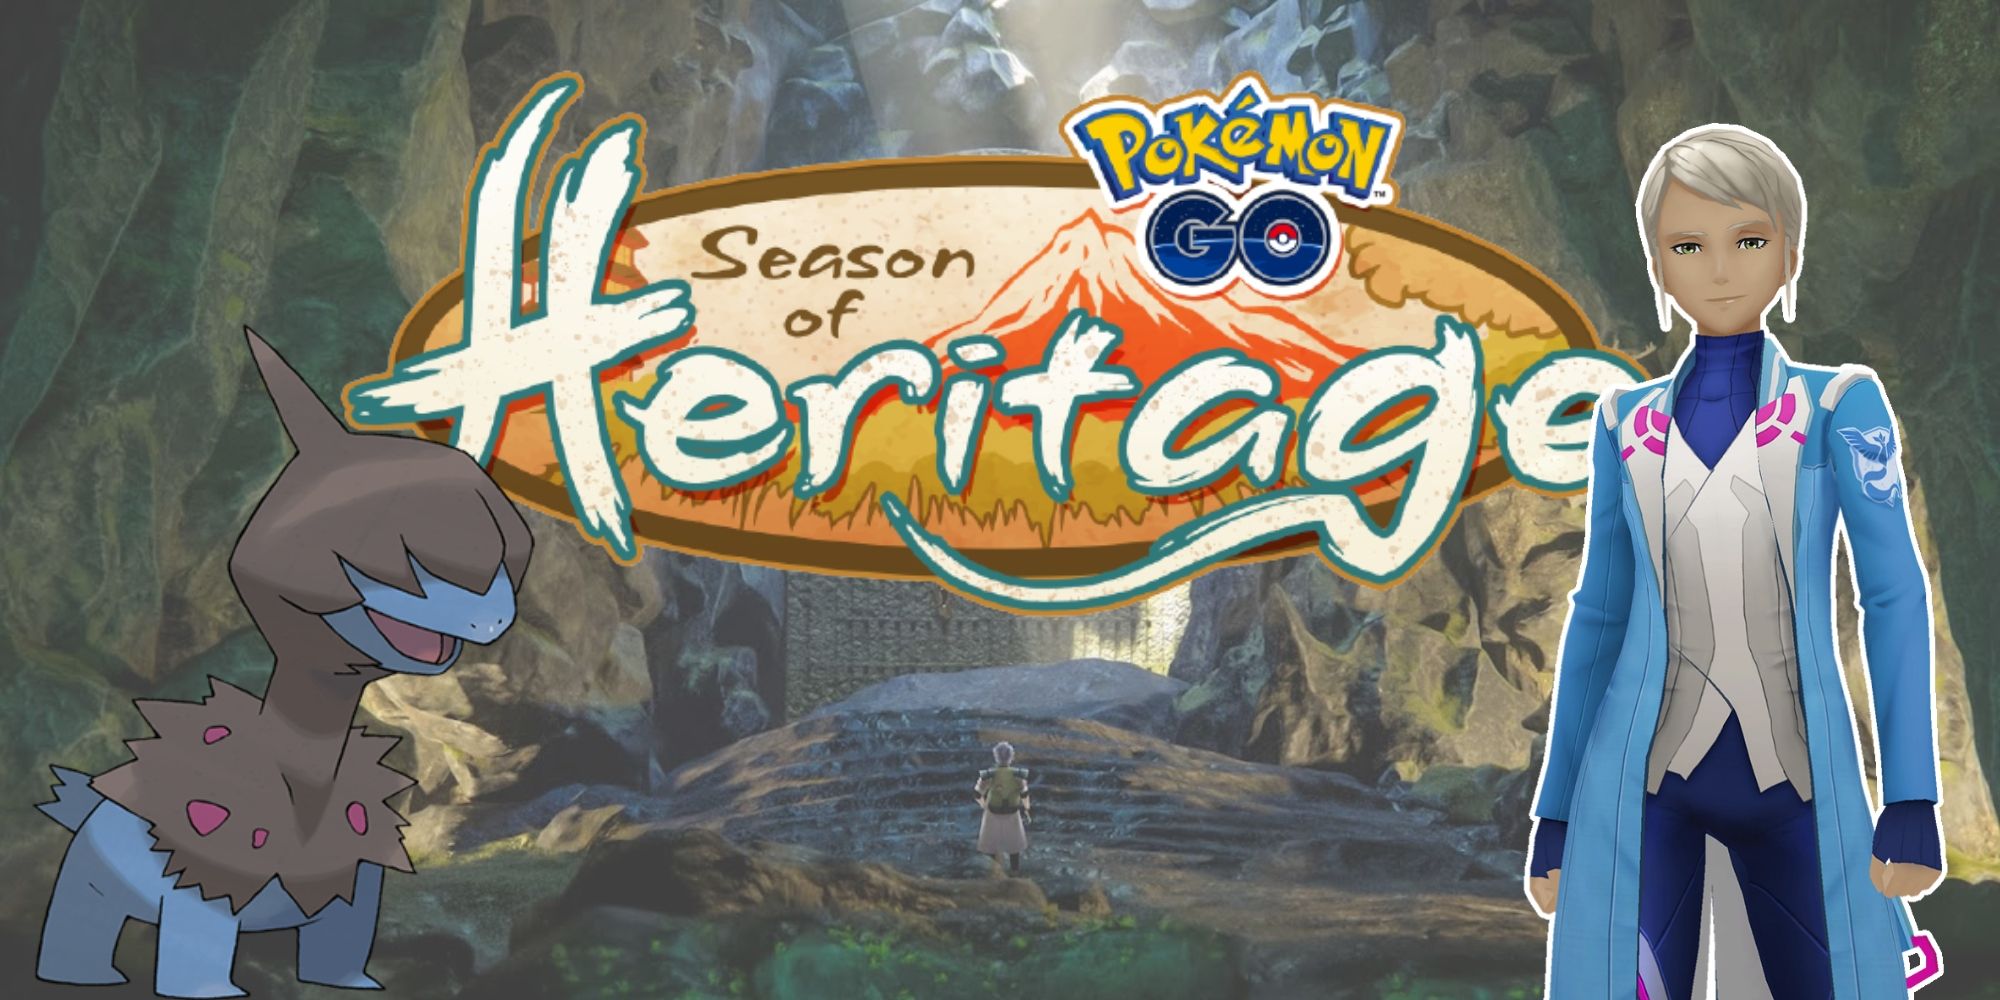 Season of Heritage Pokemon Go